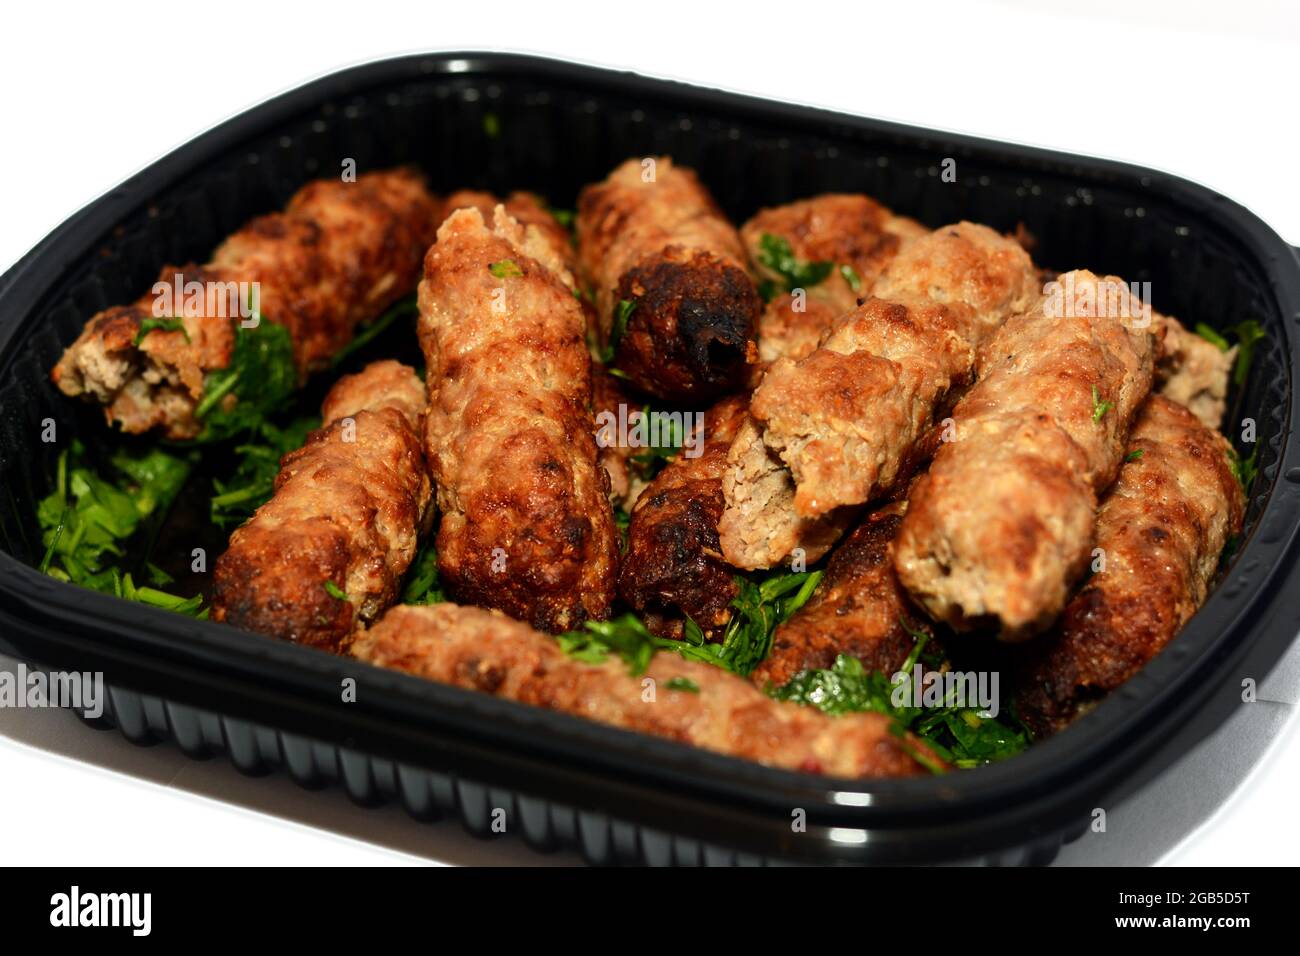 Cucina araba tradizionale cibo di manzo Kofta e carbone kebab alla griglia con prezzemolo verde su di esso, orientale grigliato cibo alla griglia Foto Stock